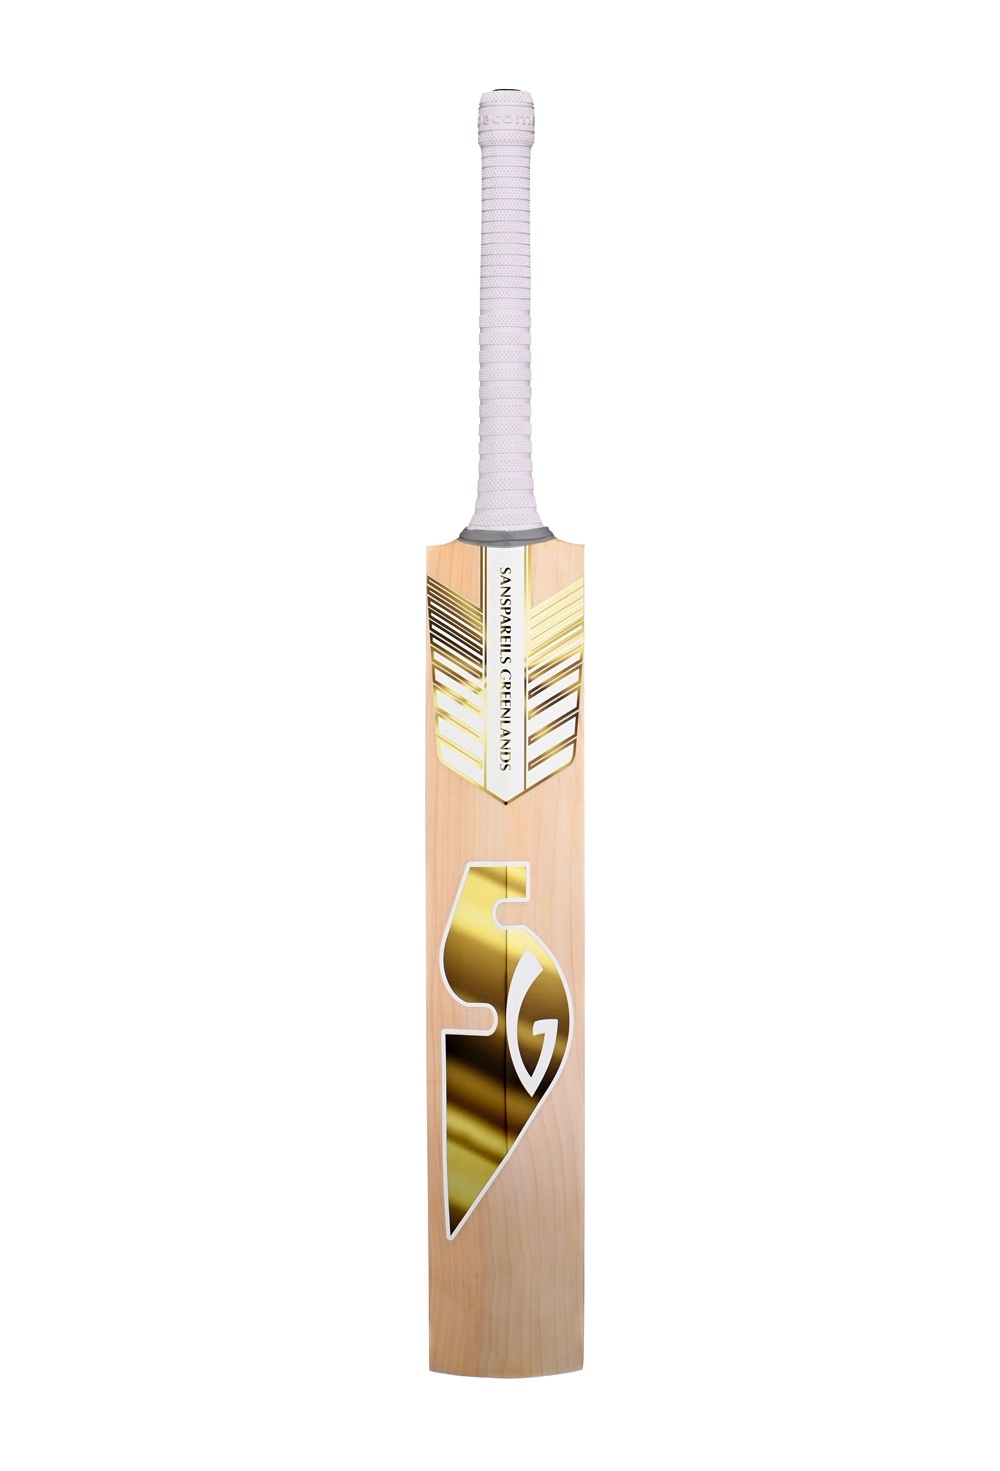 Cricket Bat - SG-SUNNY GOLD